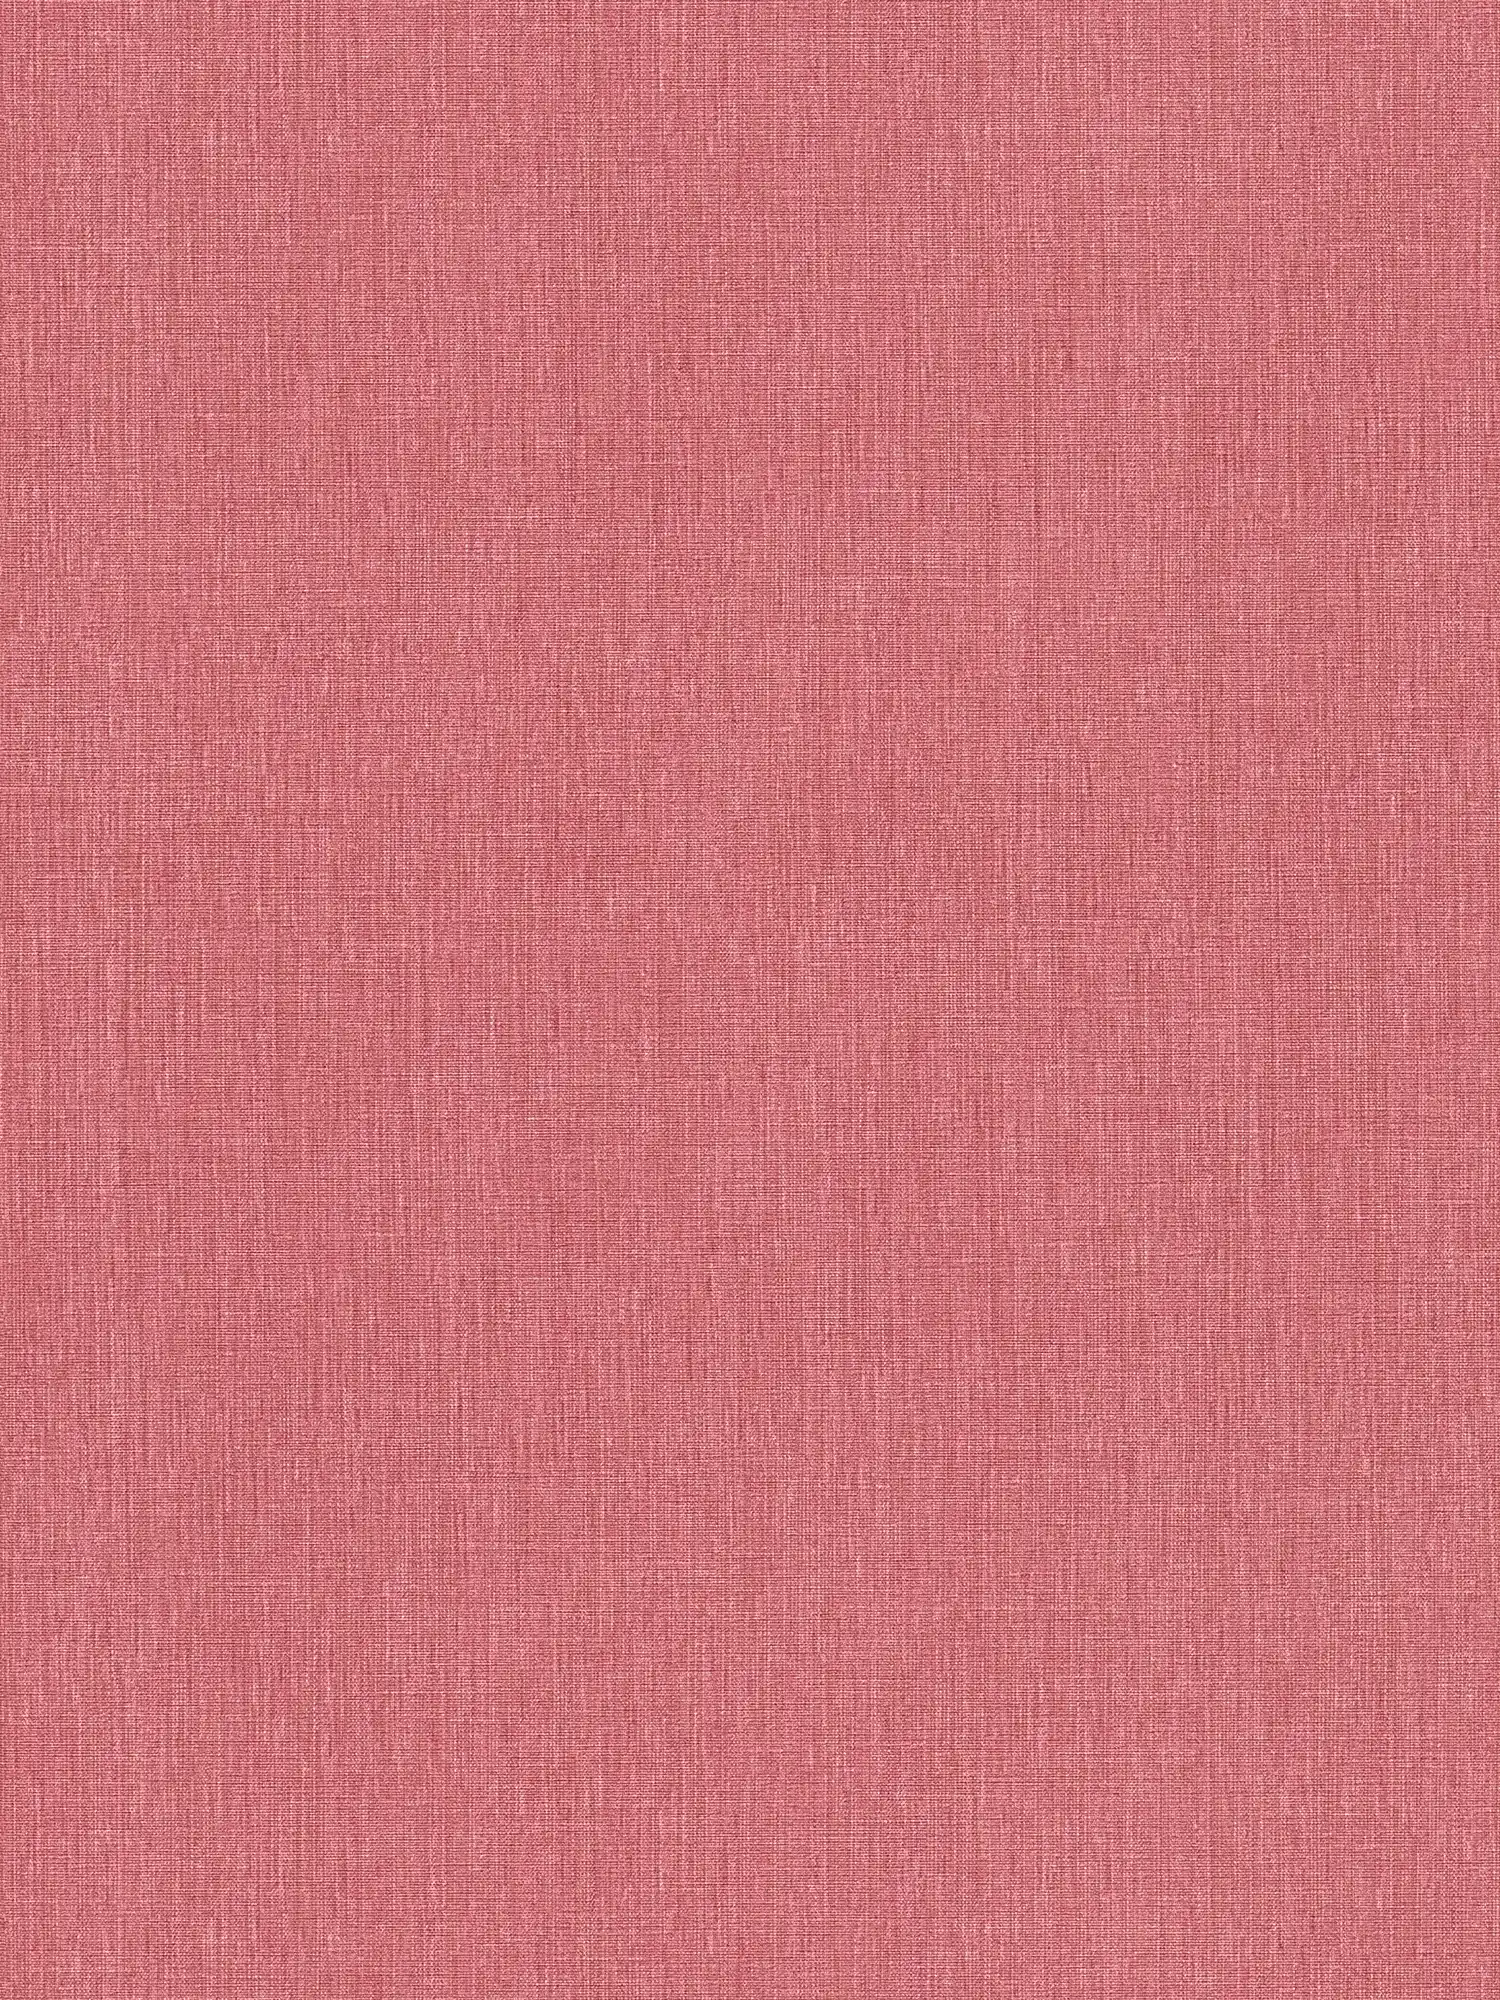 Vliesbehang in één kleur met textiellook in matte afwerking - rood
